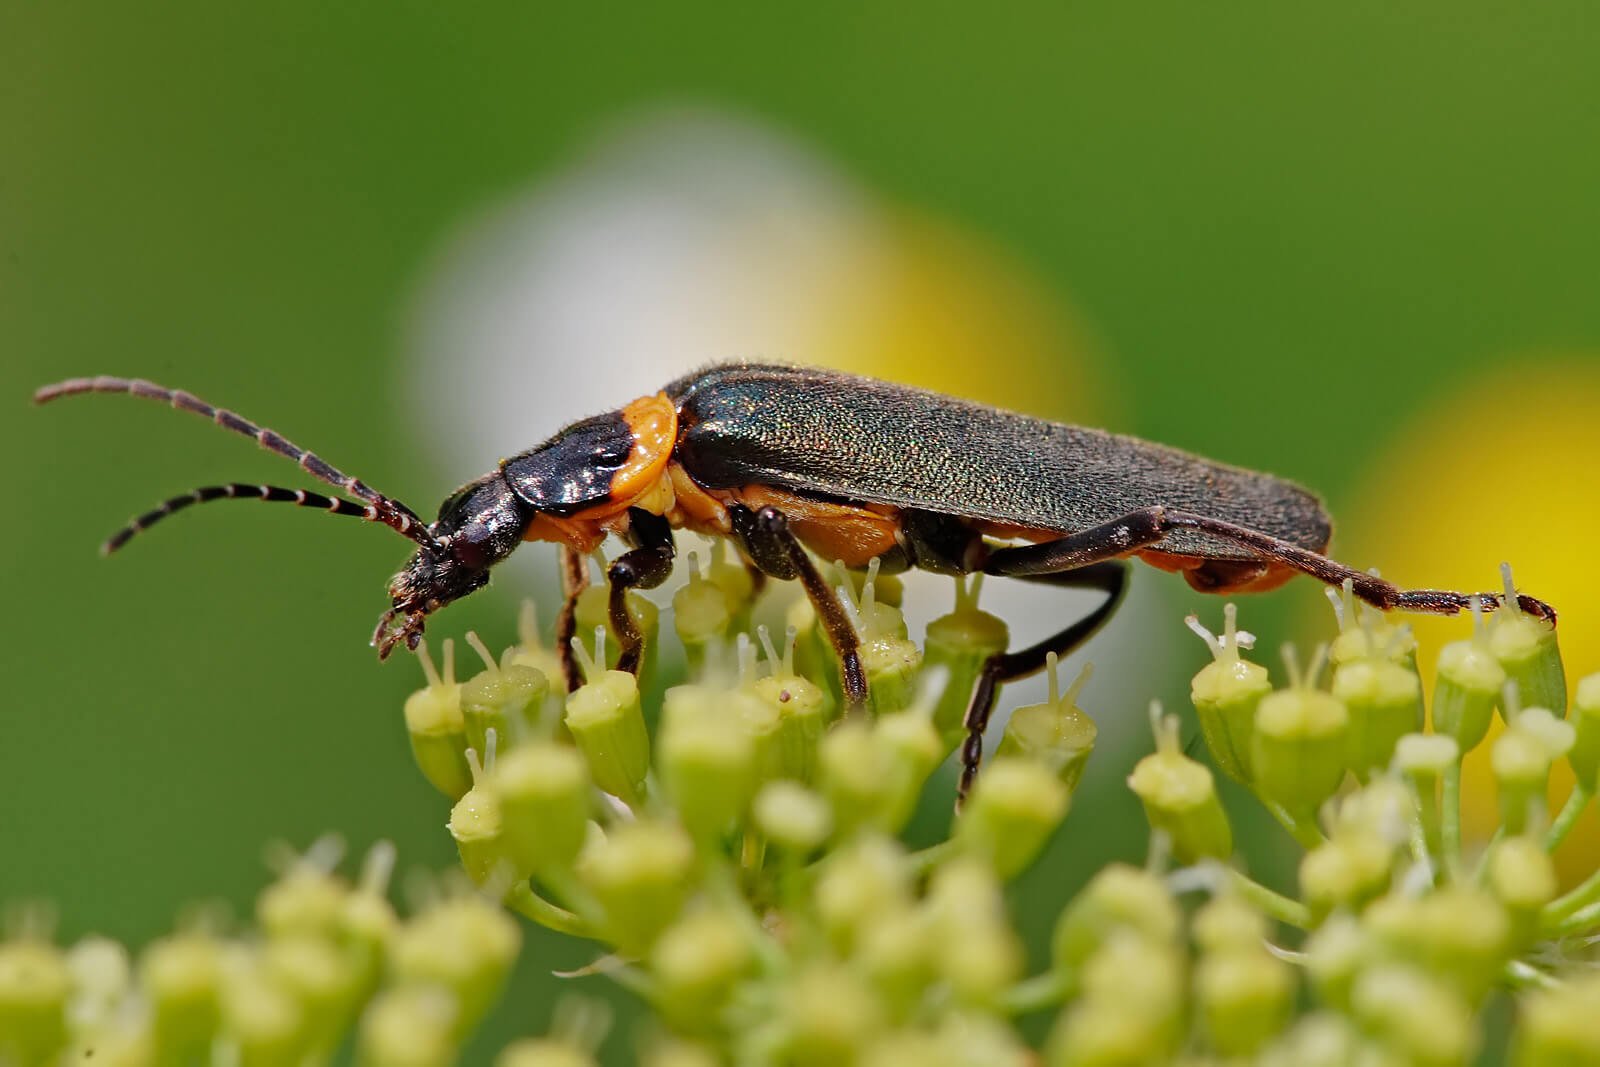 Soldier Beetles